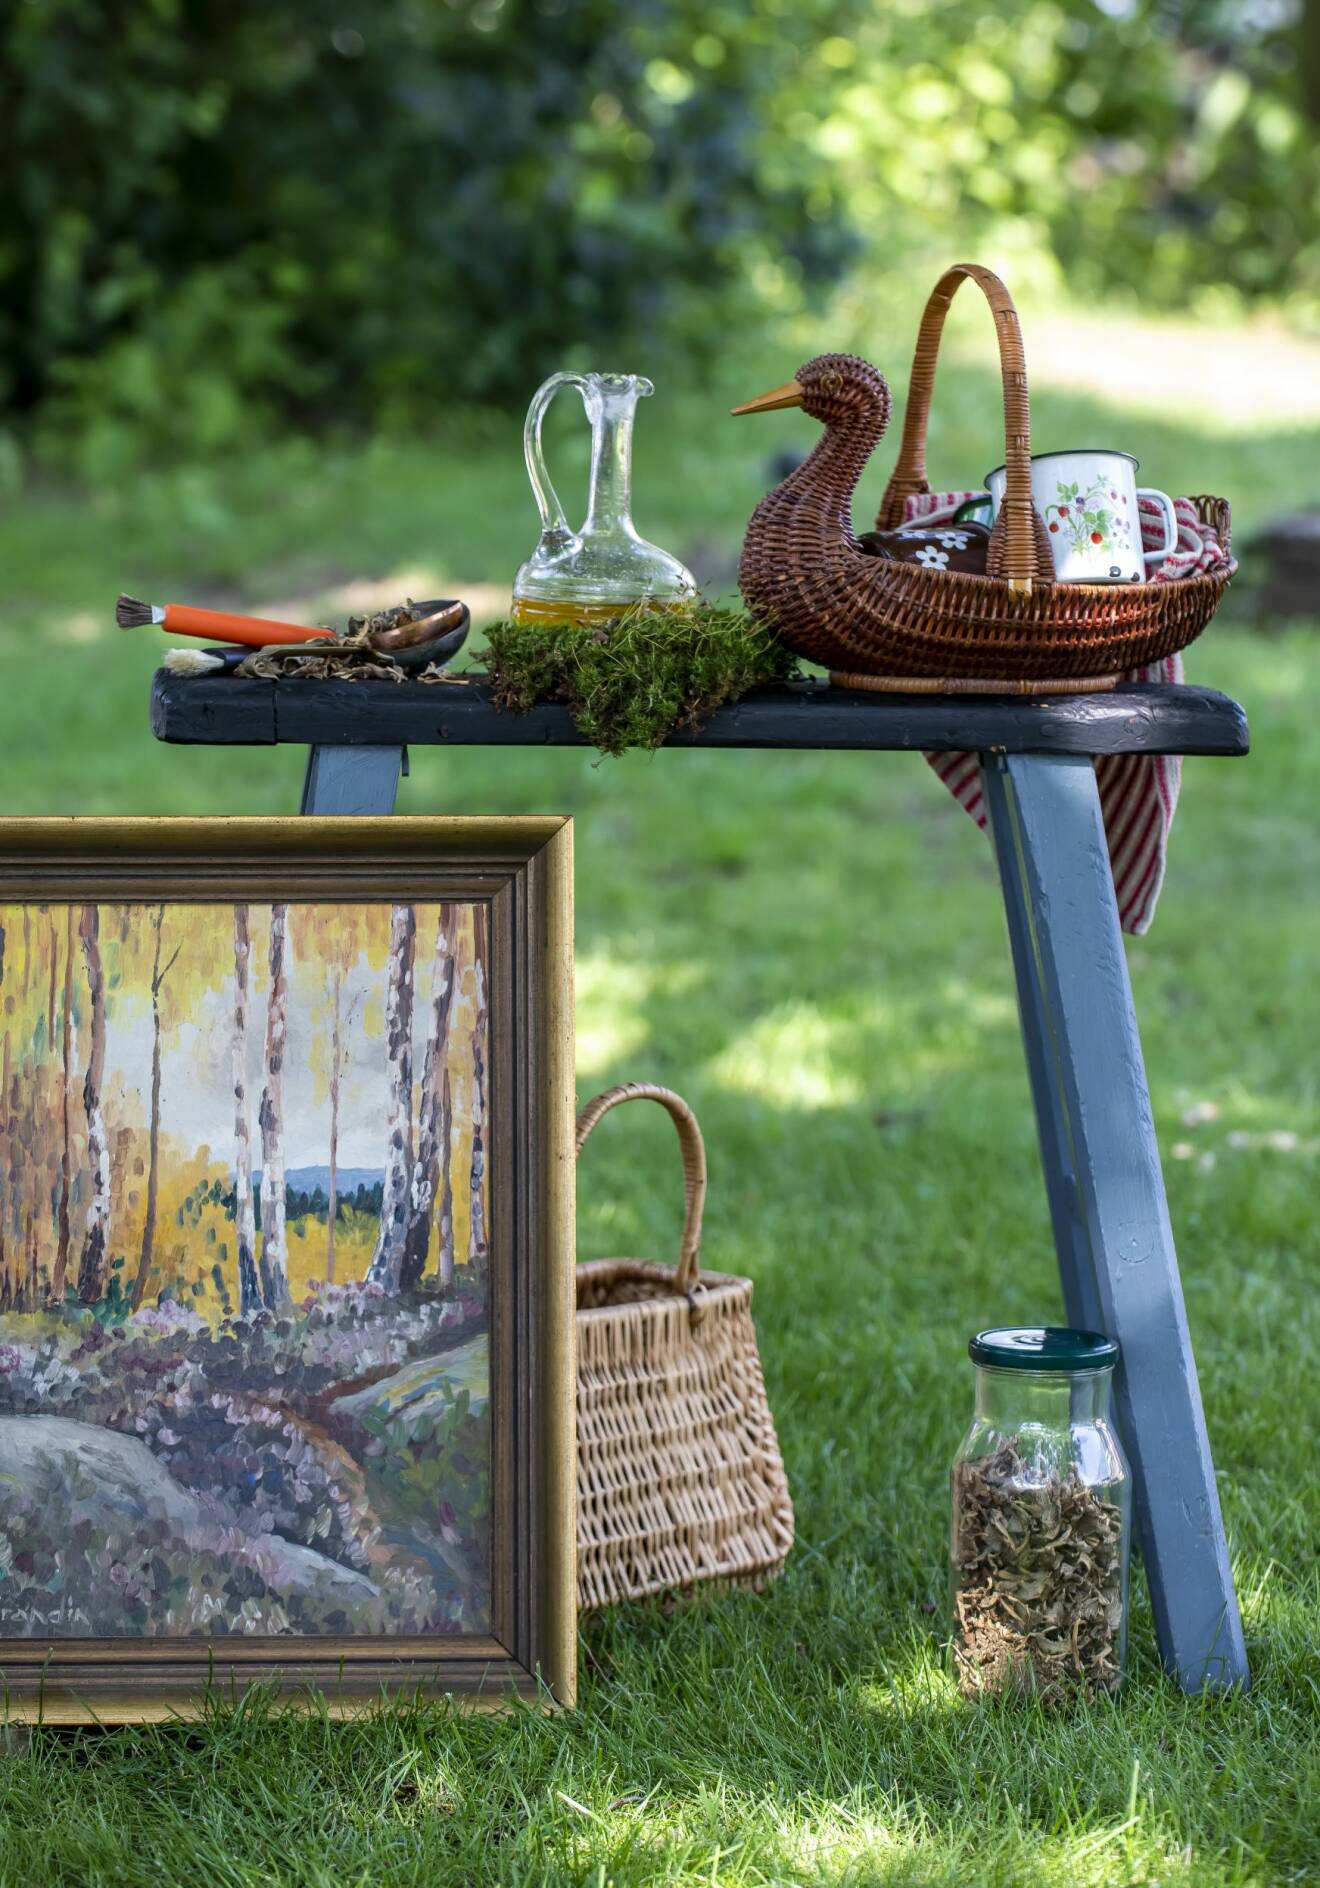 Blå allmogepall med glaskaraff och korg föreställande en and. Framför en tavla och en glasburk med svamp, grönska i bakgrunden.